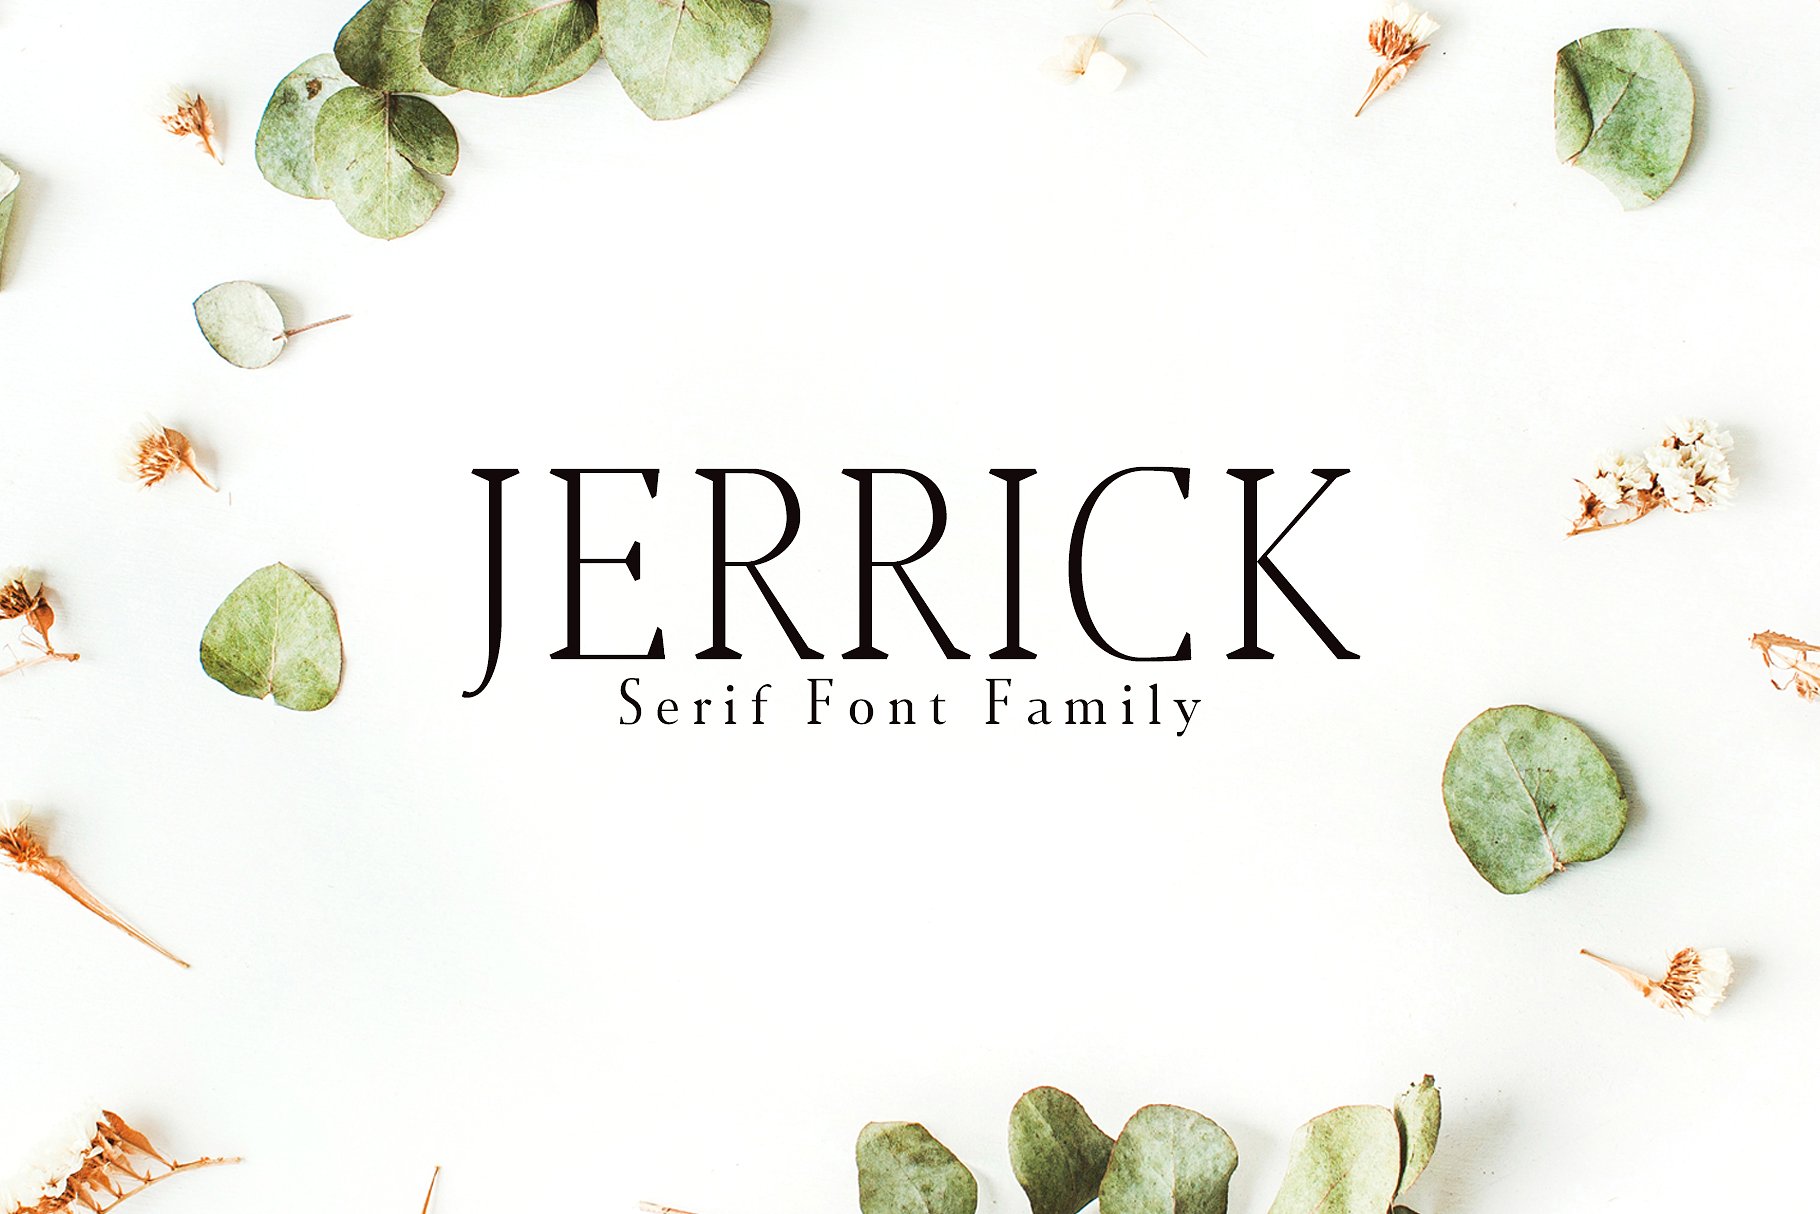 时尚高端设计字体 Jerrick Serif 6 Font